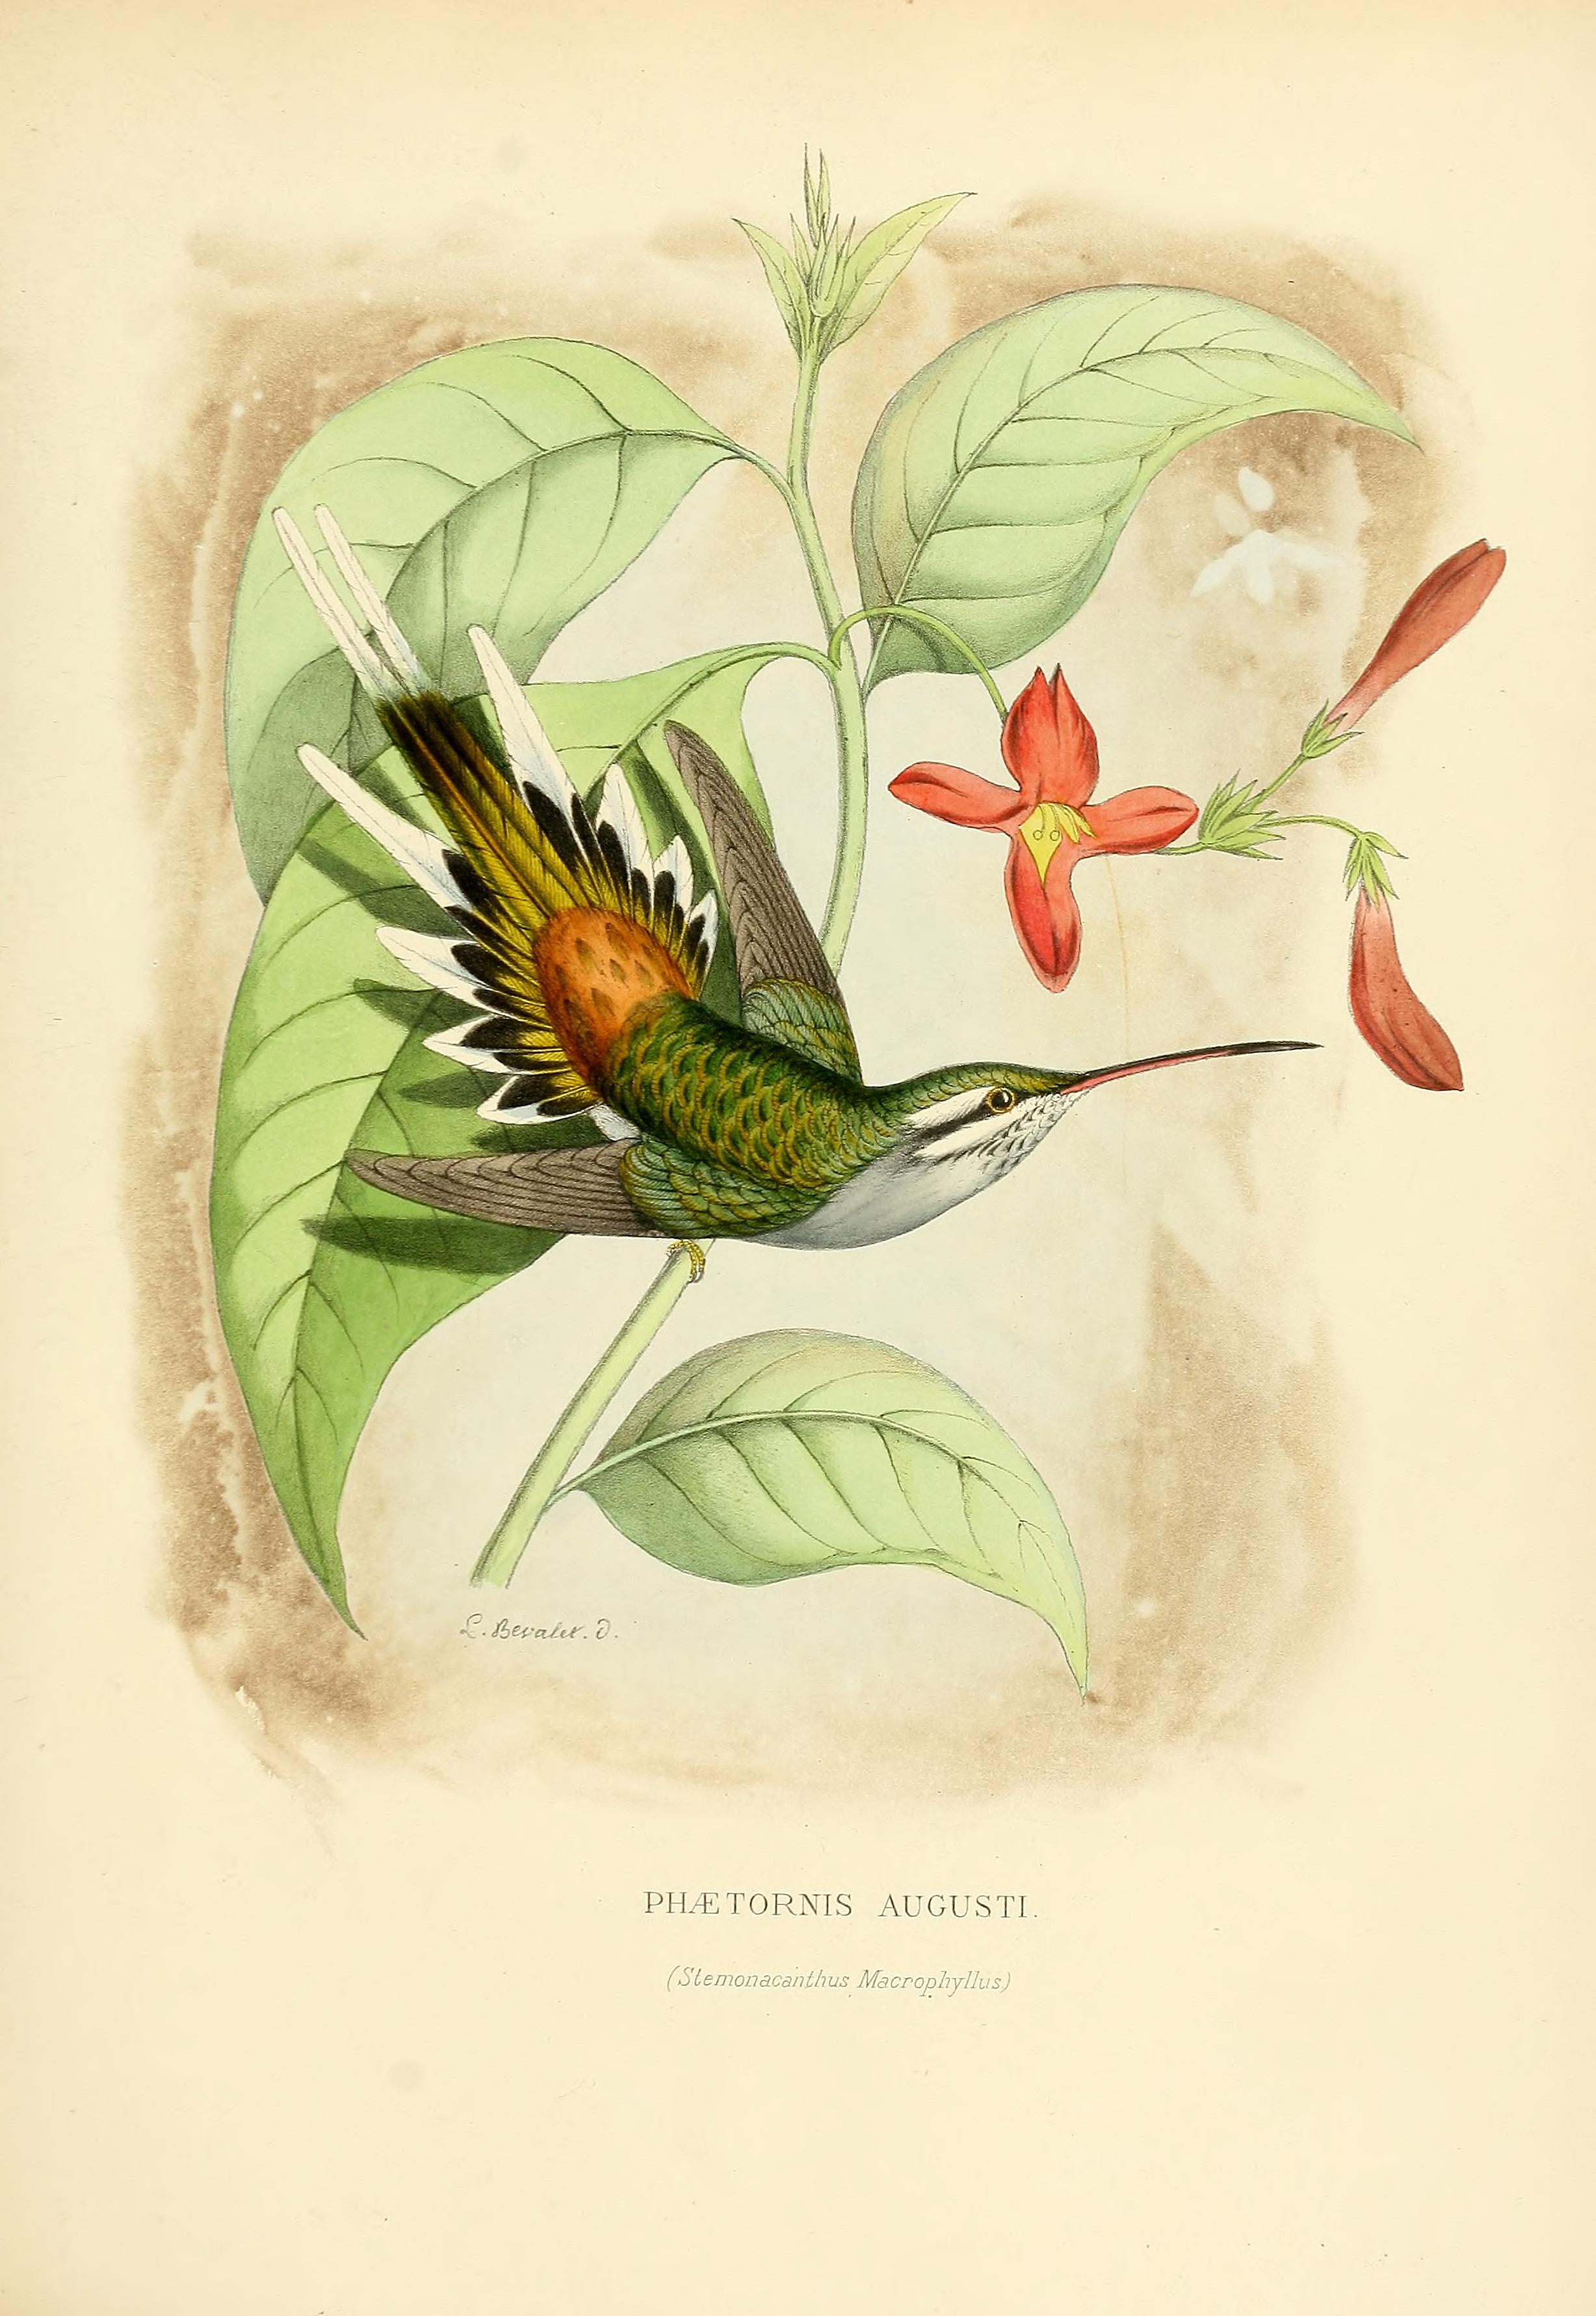 Phaethornis augusti, (Bourcier, 1847) - Ermite d'Auguste | Sandre 